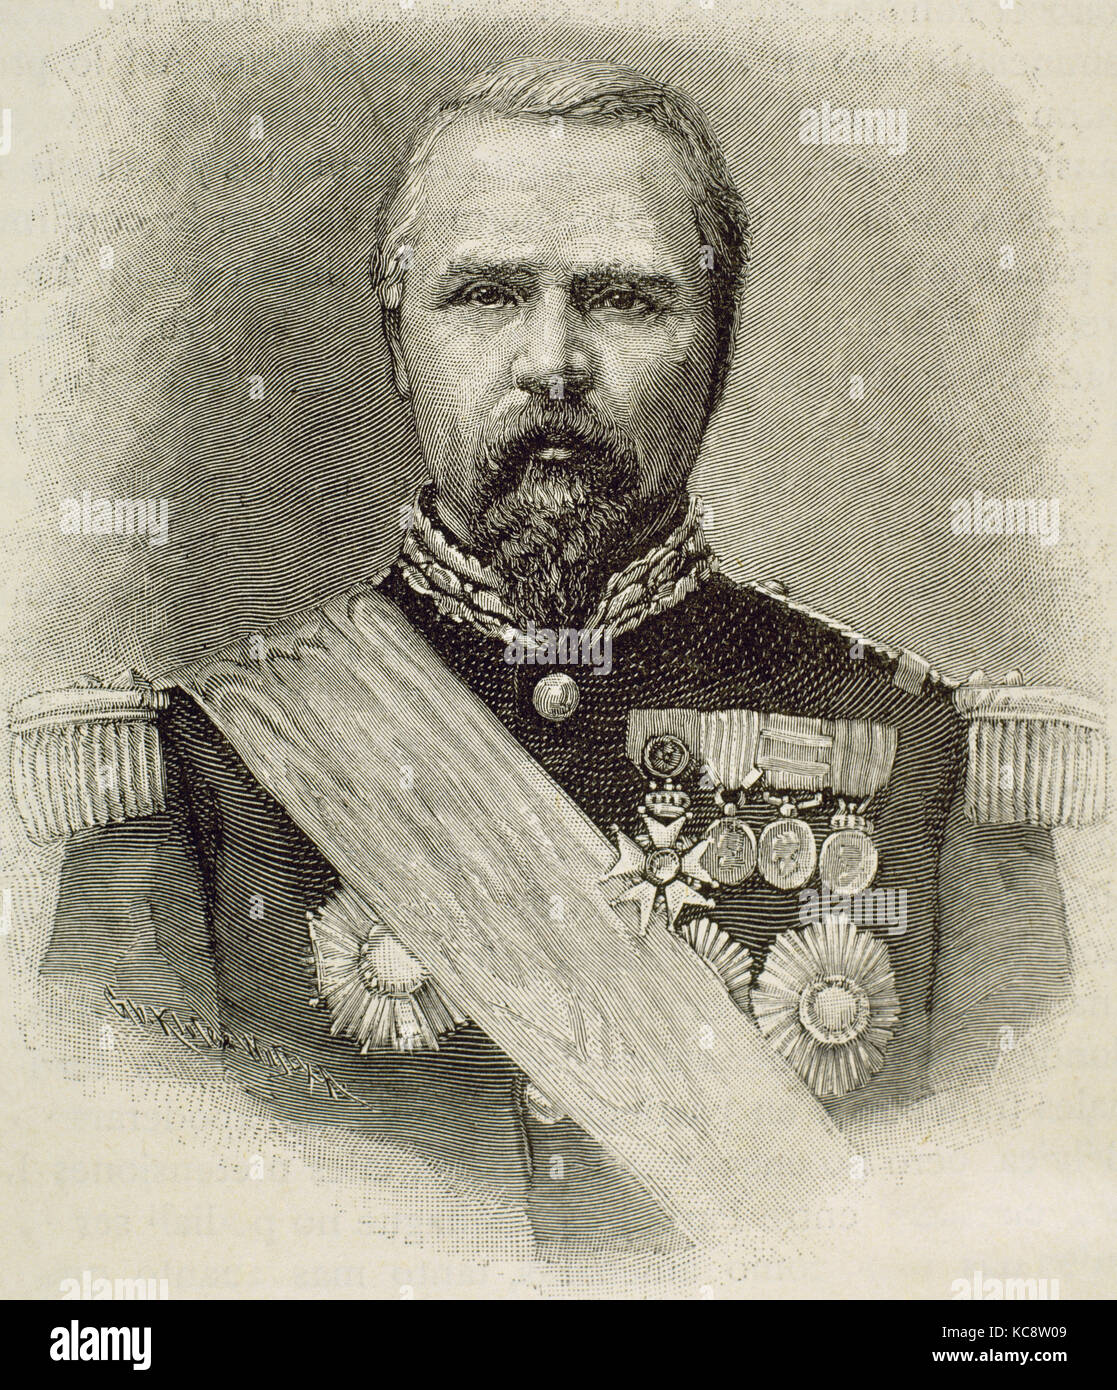 Pierre-Louis Charles de Failly (1810-1892). Der französische General. Porträt. Kupferstich von Klose. Stockfoto